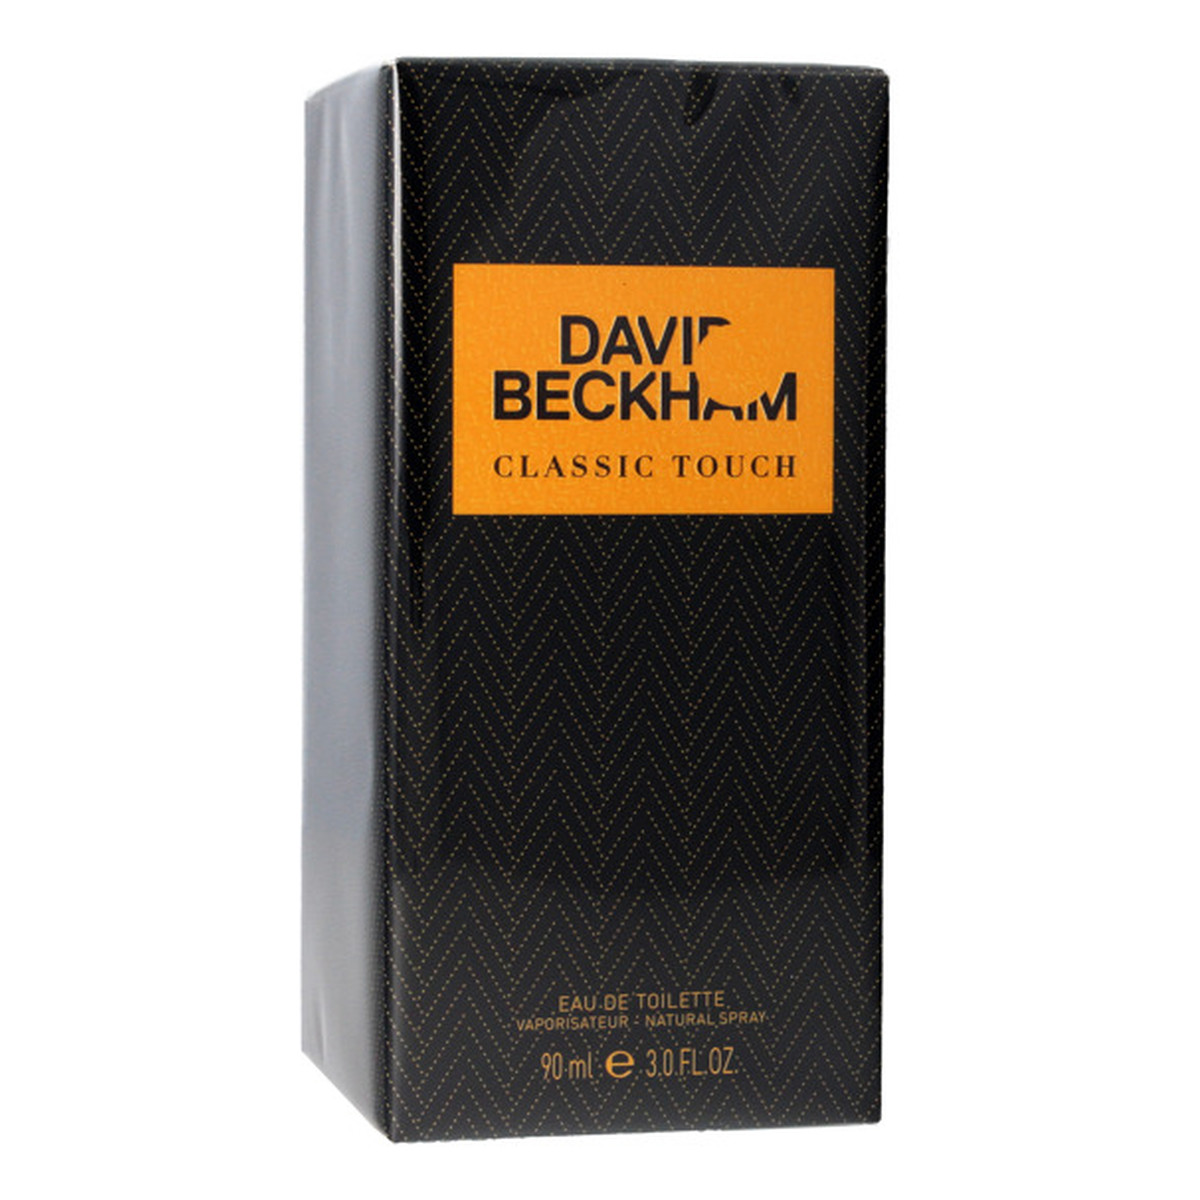 David Beckham Classic Touch woda toaletowa 90ml